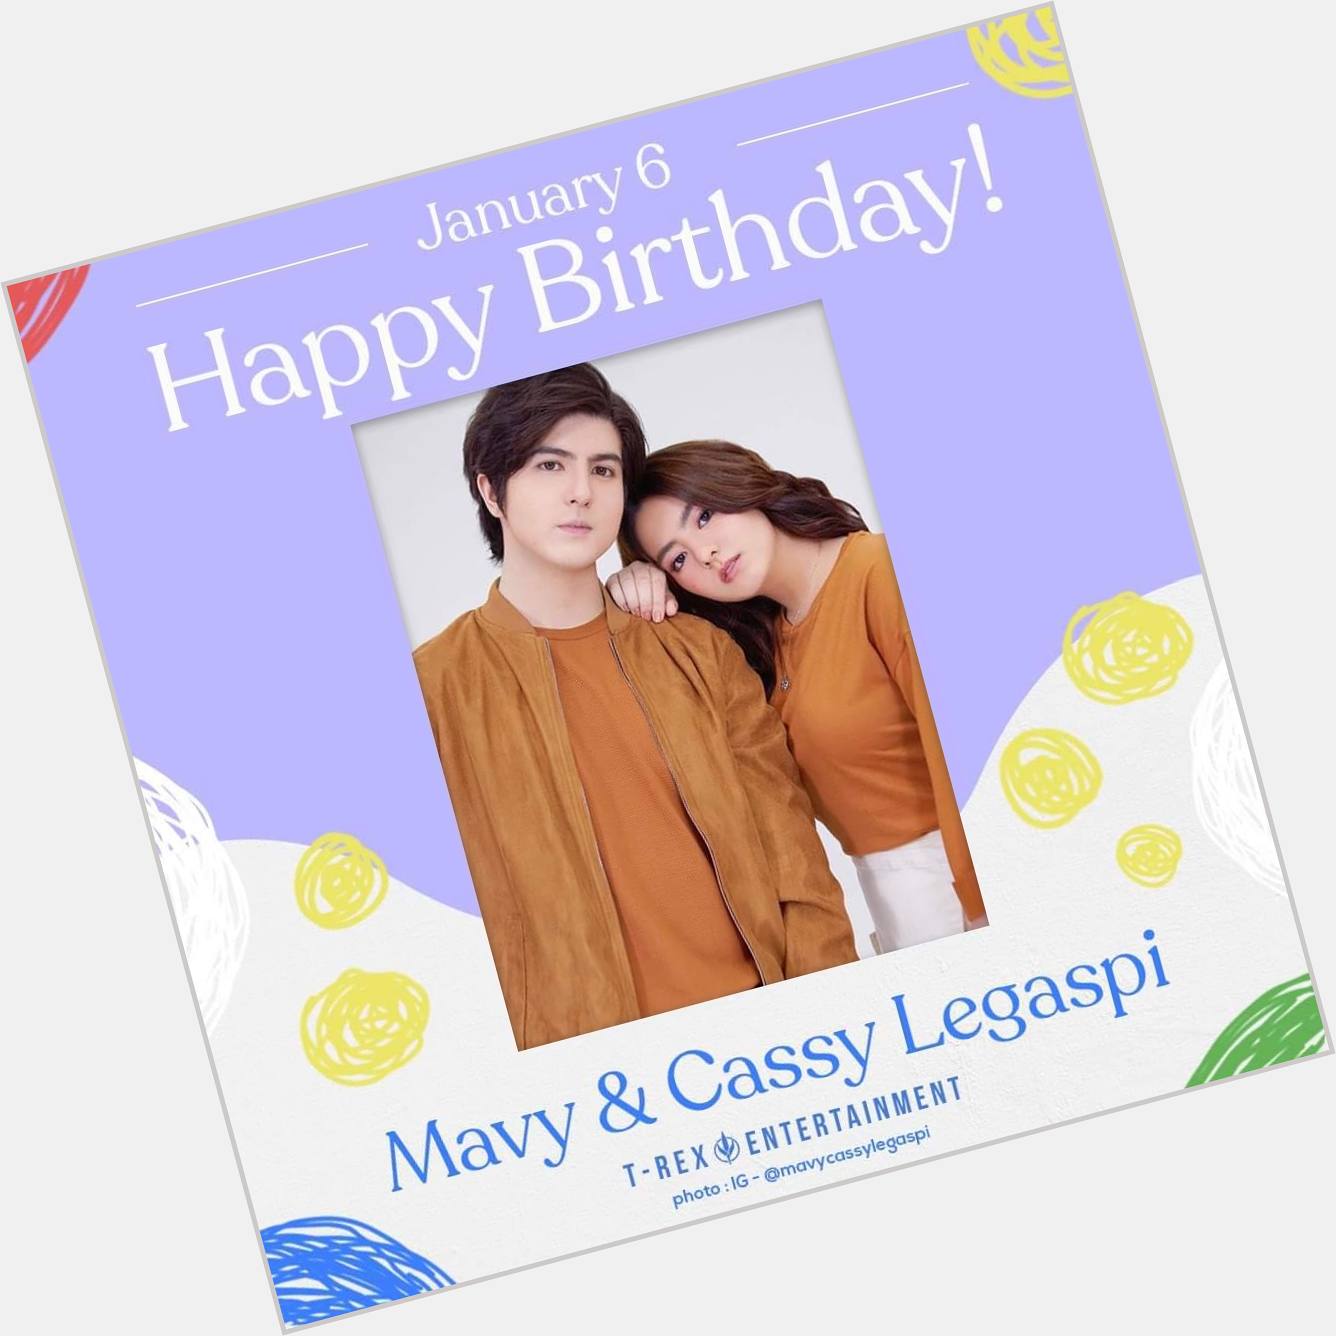 Carmina Villarroel and Zoren Legaspi s twins, Mavy & Cassy Legaspi, are now 20 years old! Happy birthday!  